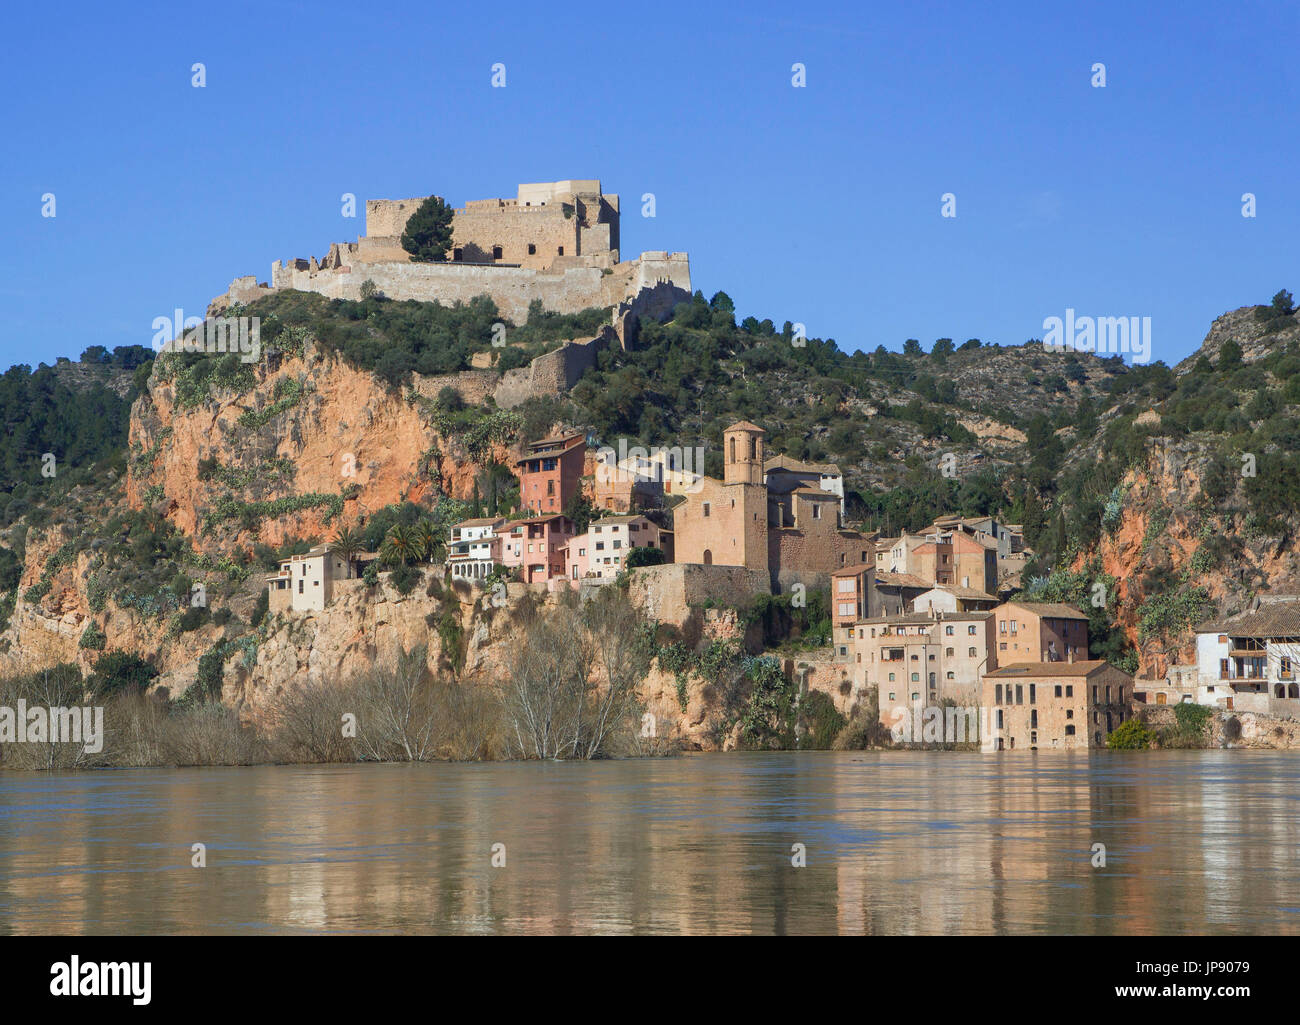 Spain, Catalonia, Tarragona Province, Benifallet City, Ebro river Stock Photo